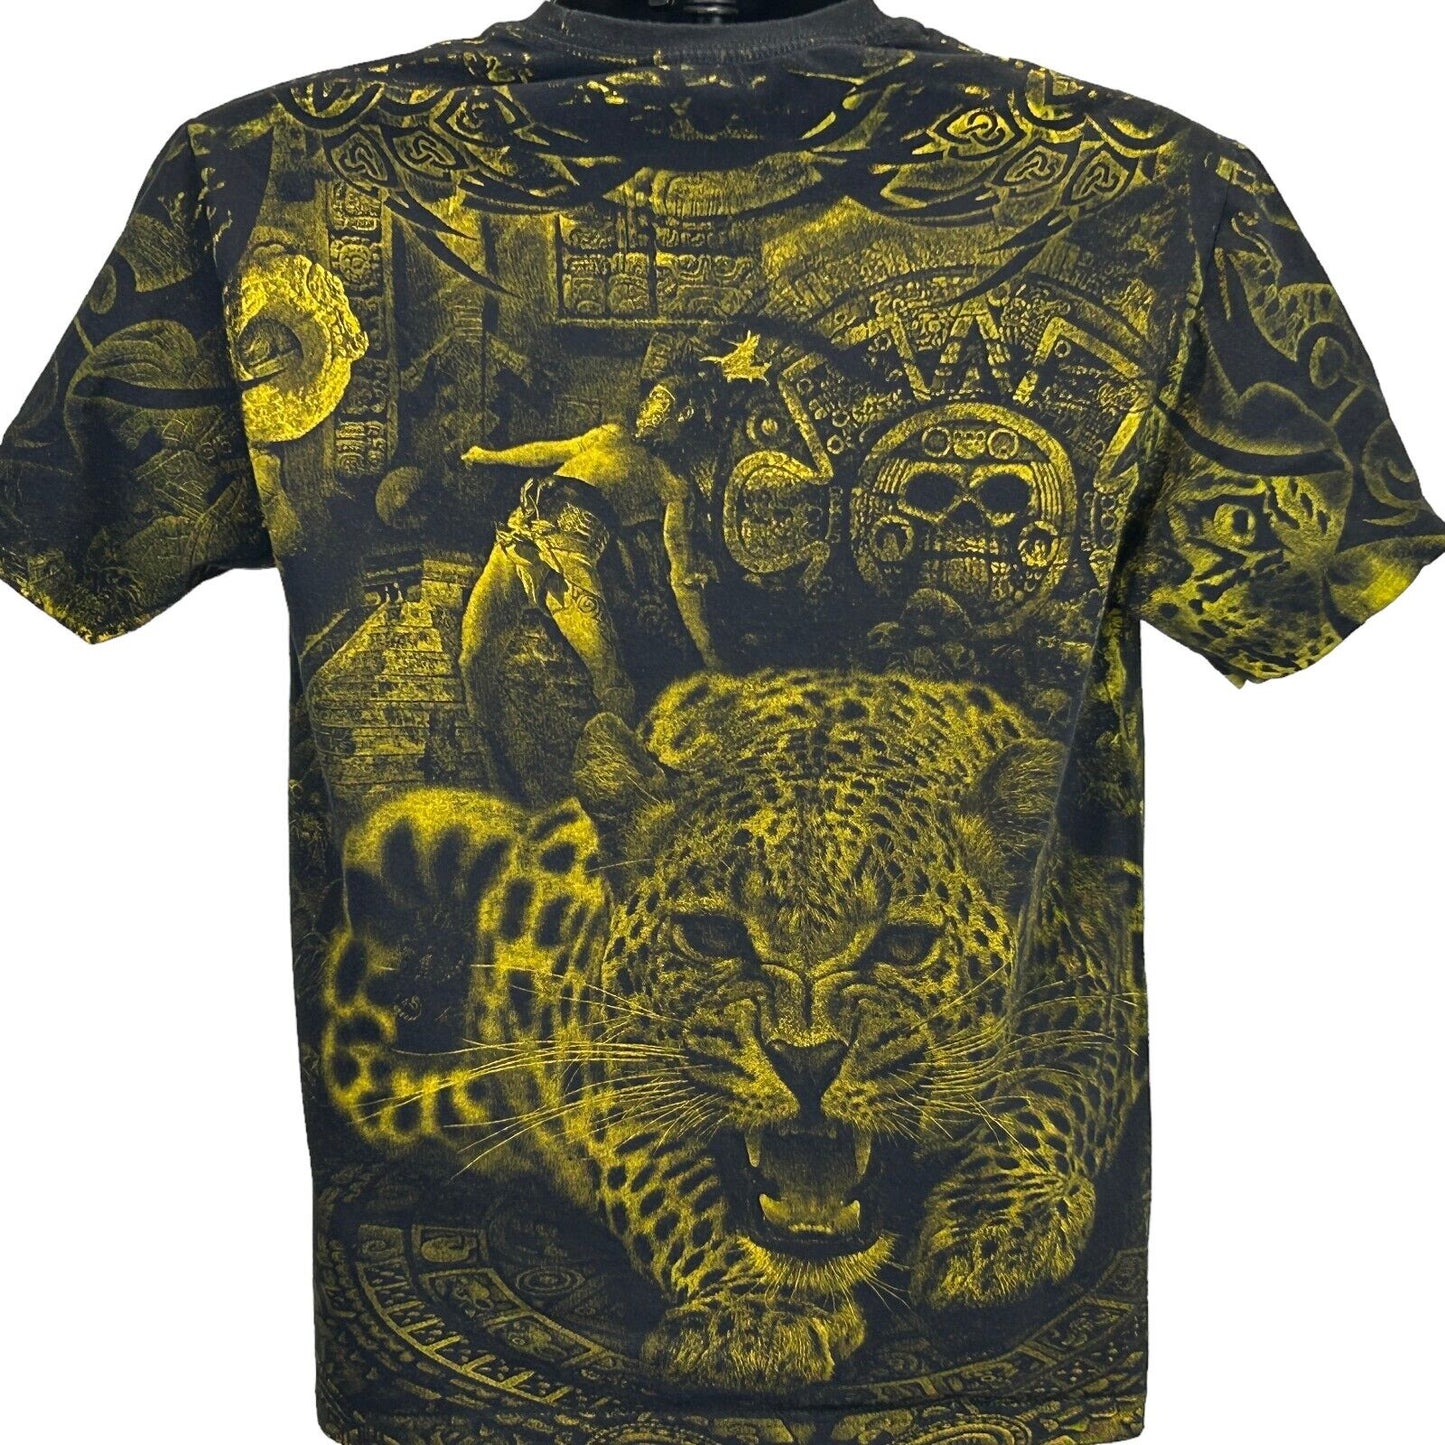 Cancun Mexico AOP T Shirt Mayan Jaguar All Over Print Black Graphic Tee Medium